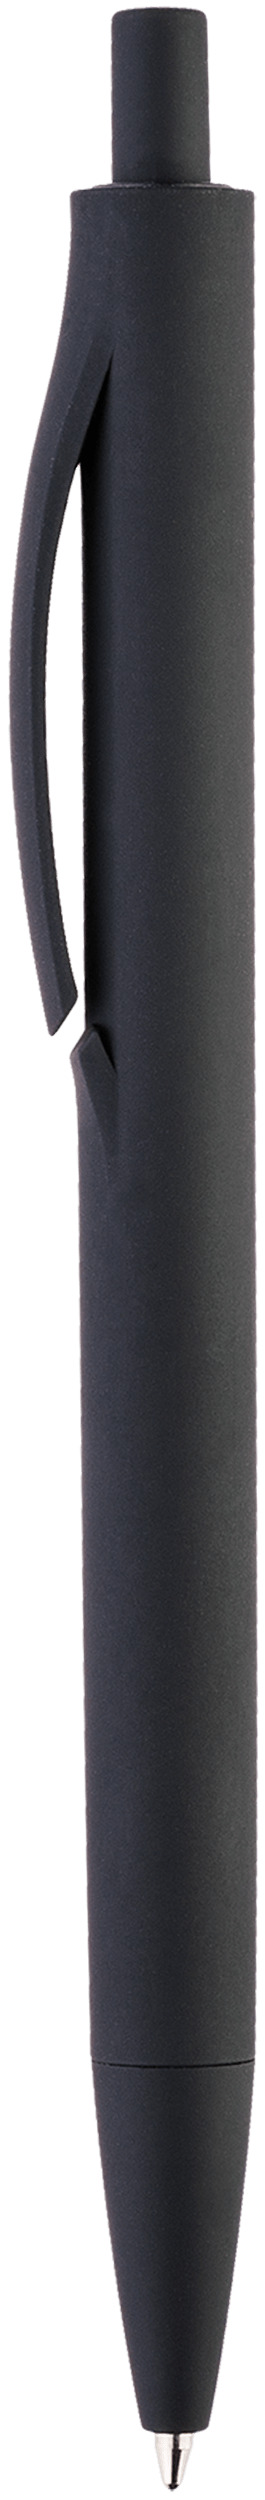 Ручка Igla Soft, чёрная, вид сбоку